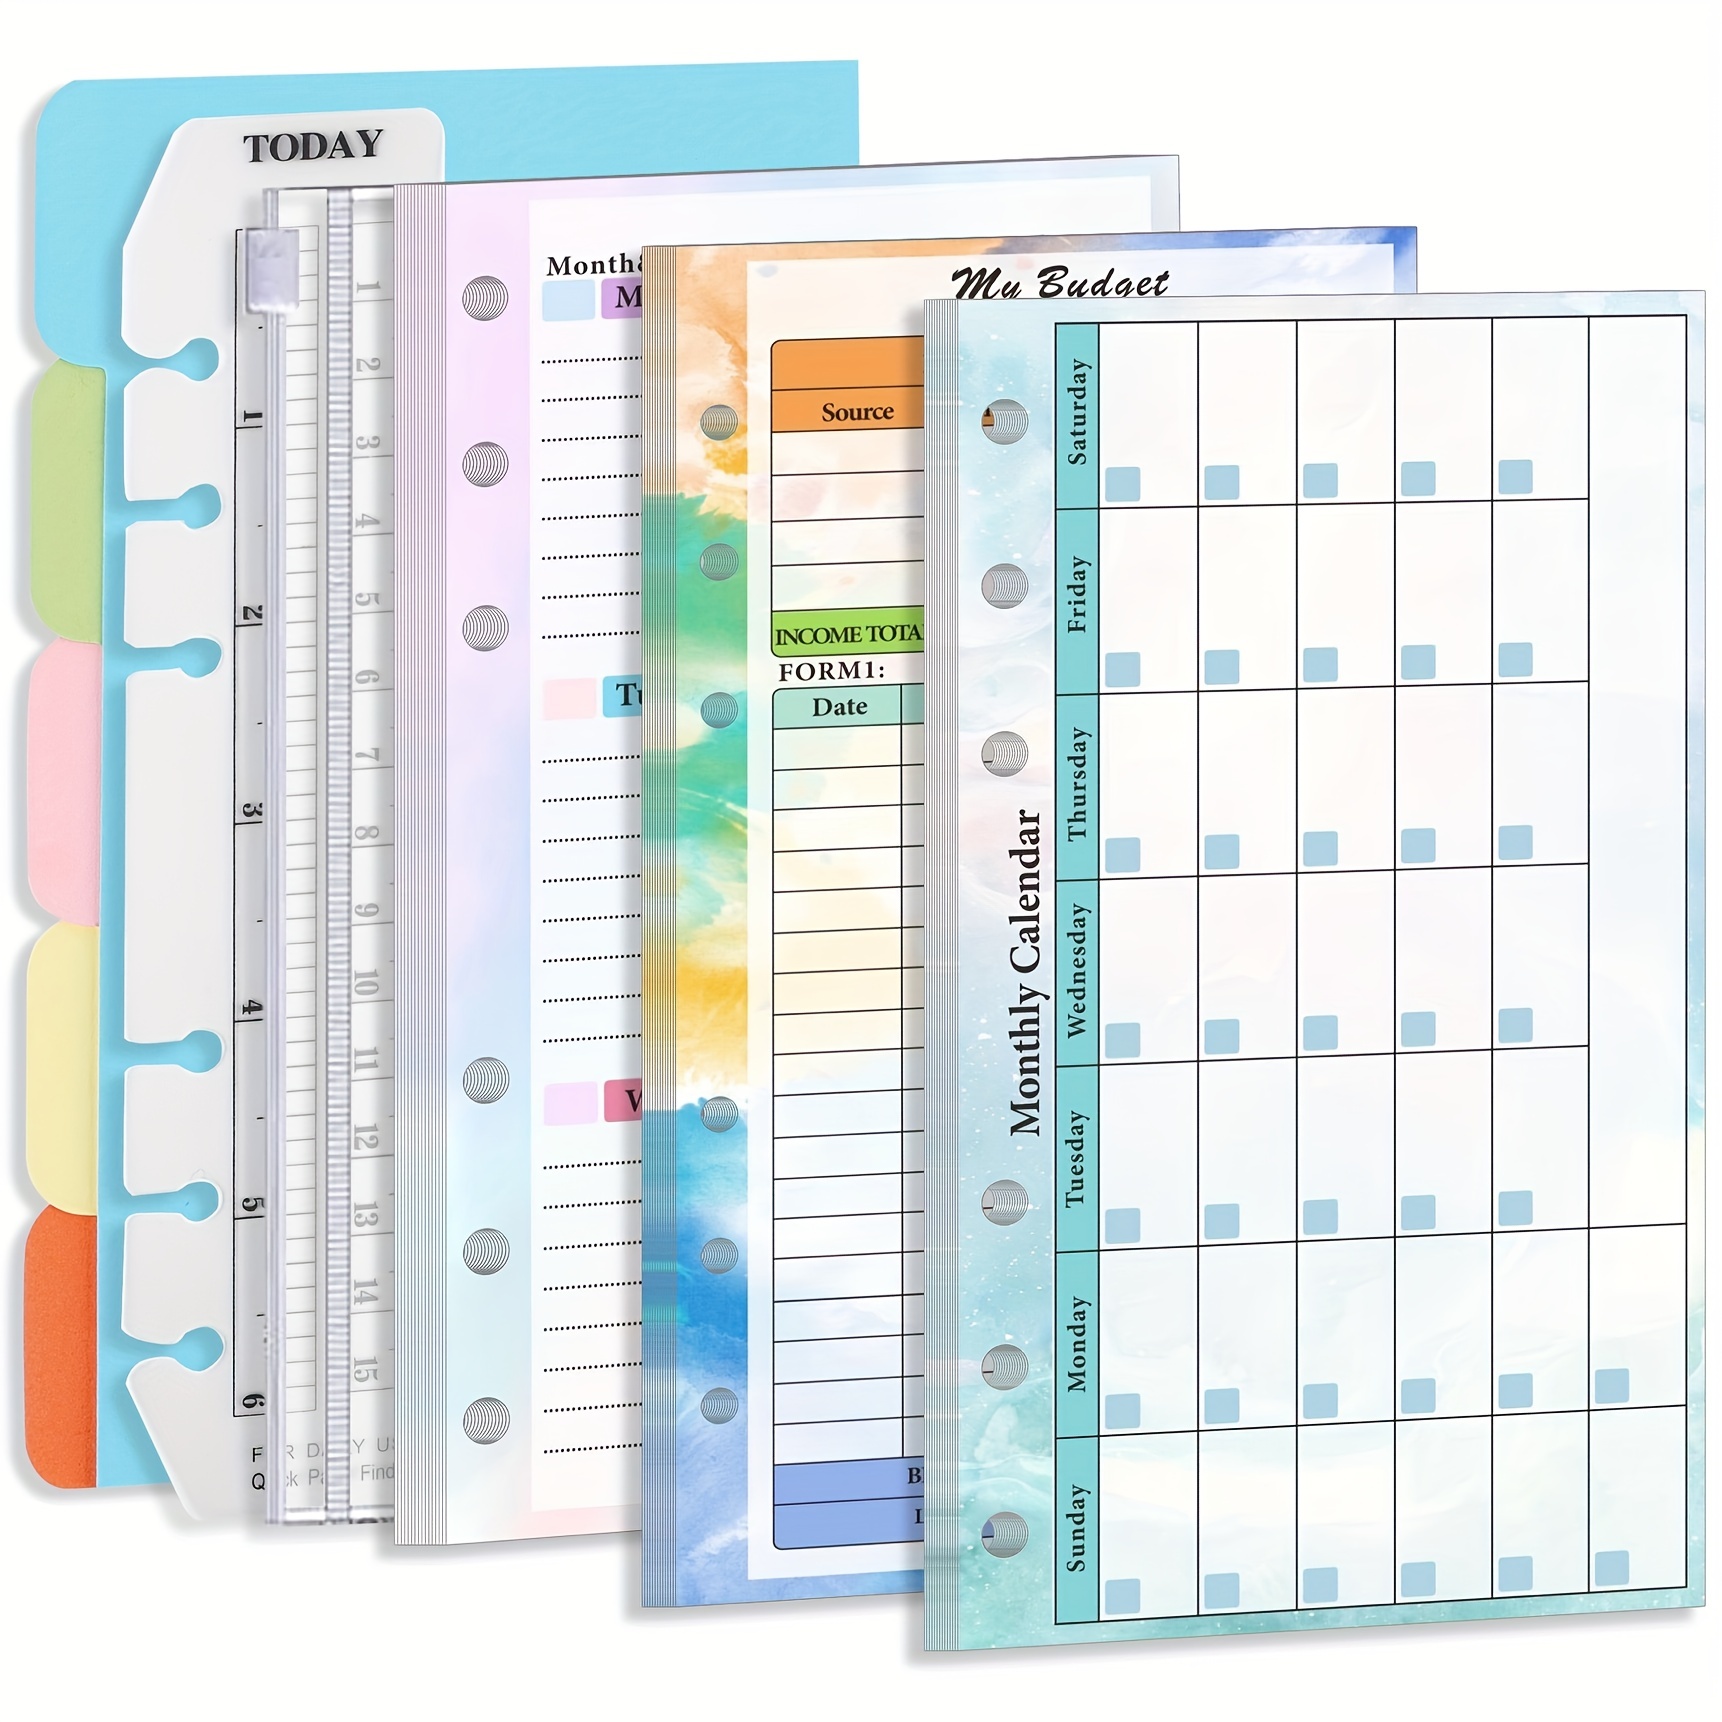 Office School Supplies Ruler, Notebook Planner A6 Ruler